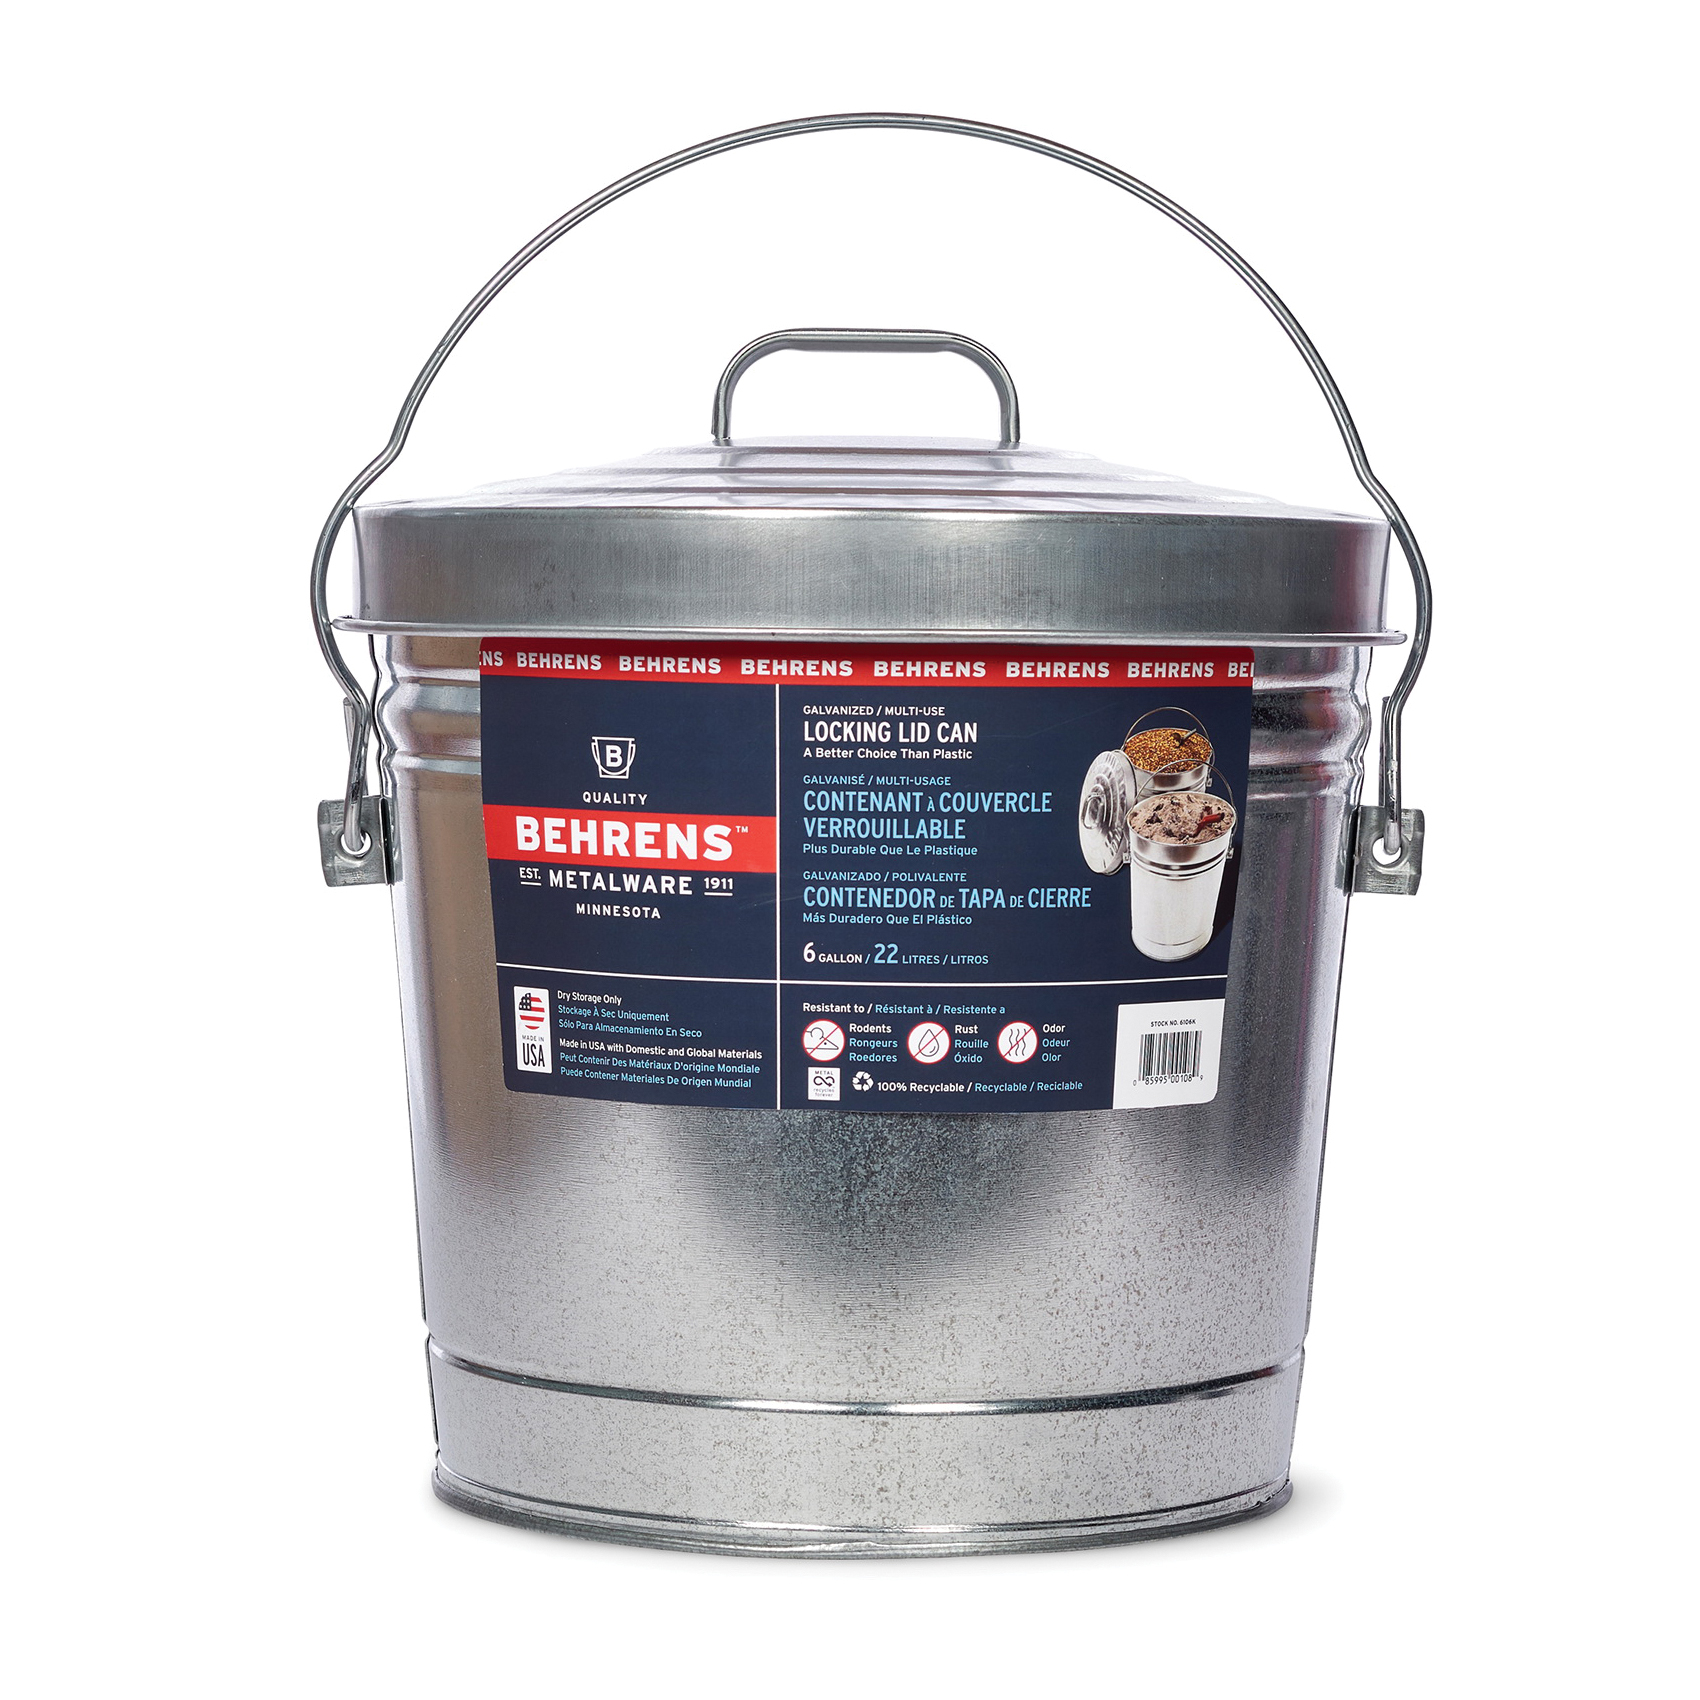 Behrens 6106 Kit Locking Lid Can, 6 gal Capacity, Steel, Silver, Lid Closure - 1